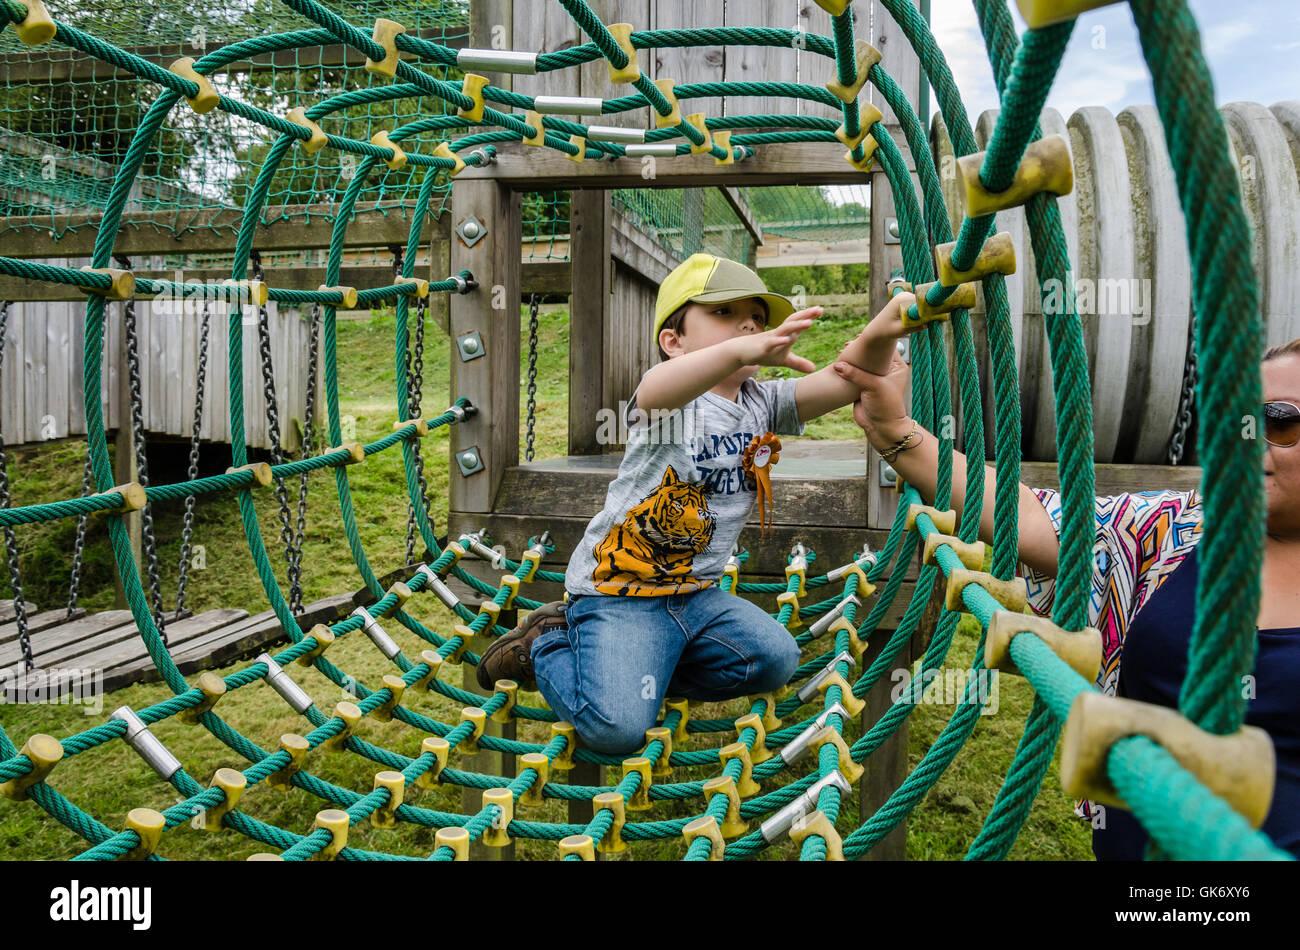 Un jeune garçon joue sur une nette escalade à une aire de jeux pour enfants avec un coup de main de sa maman. Banque D'Images